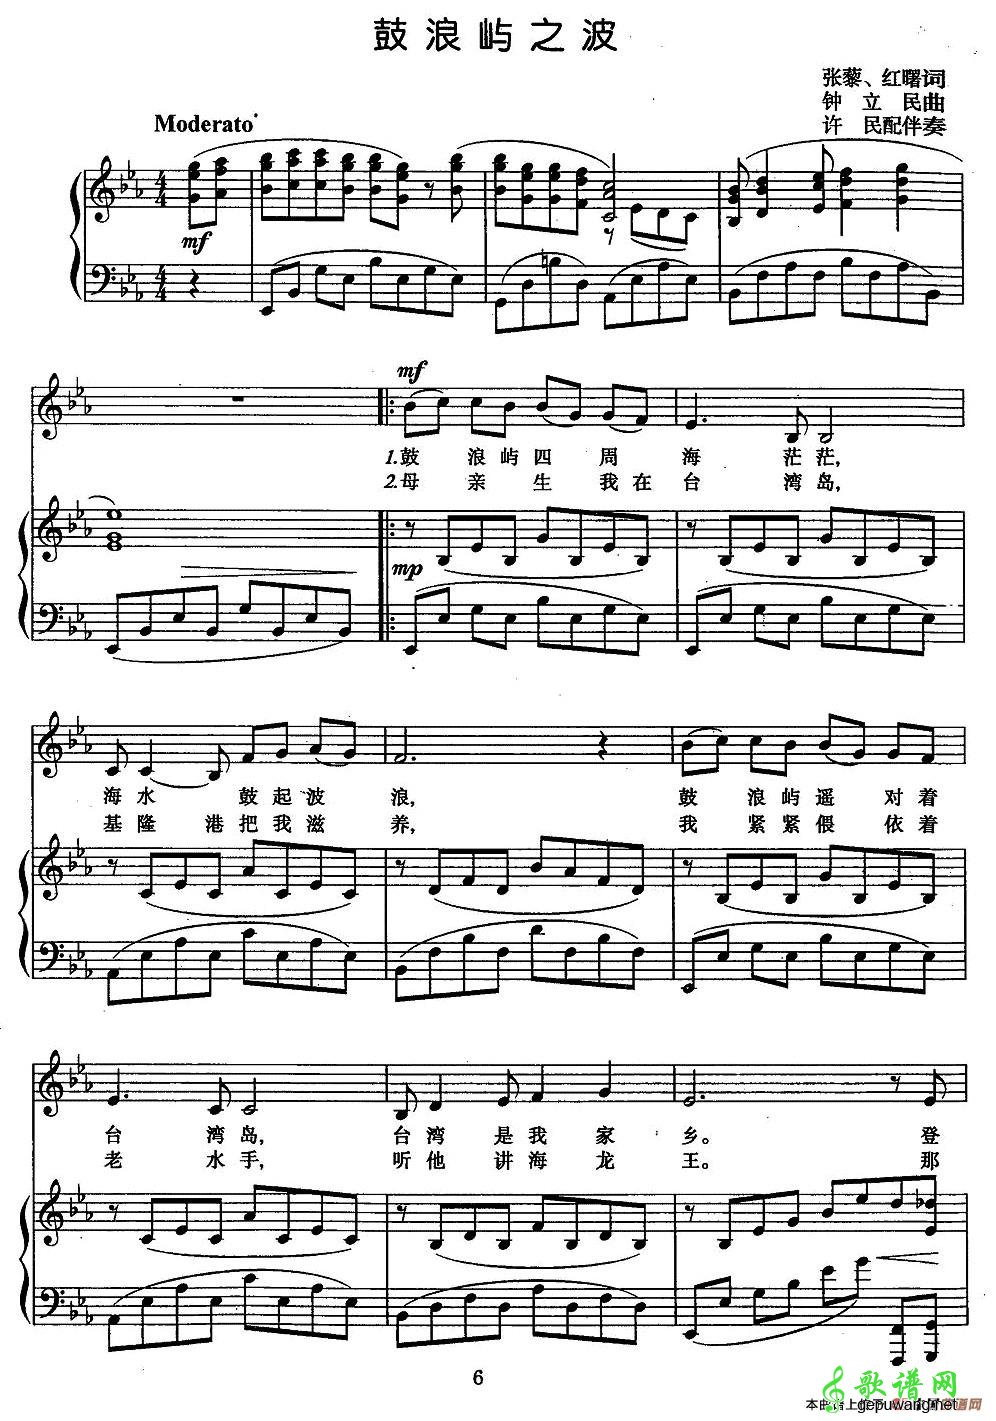 鼓浪屿之波钢琴谱(2)